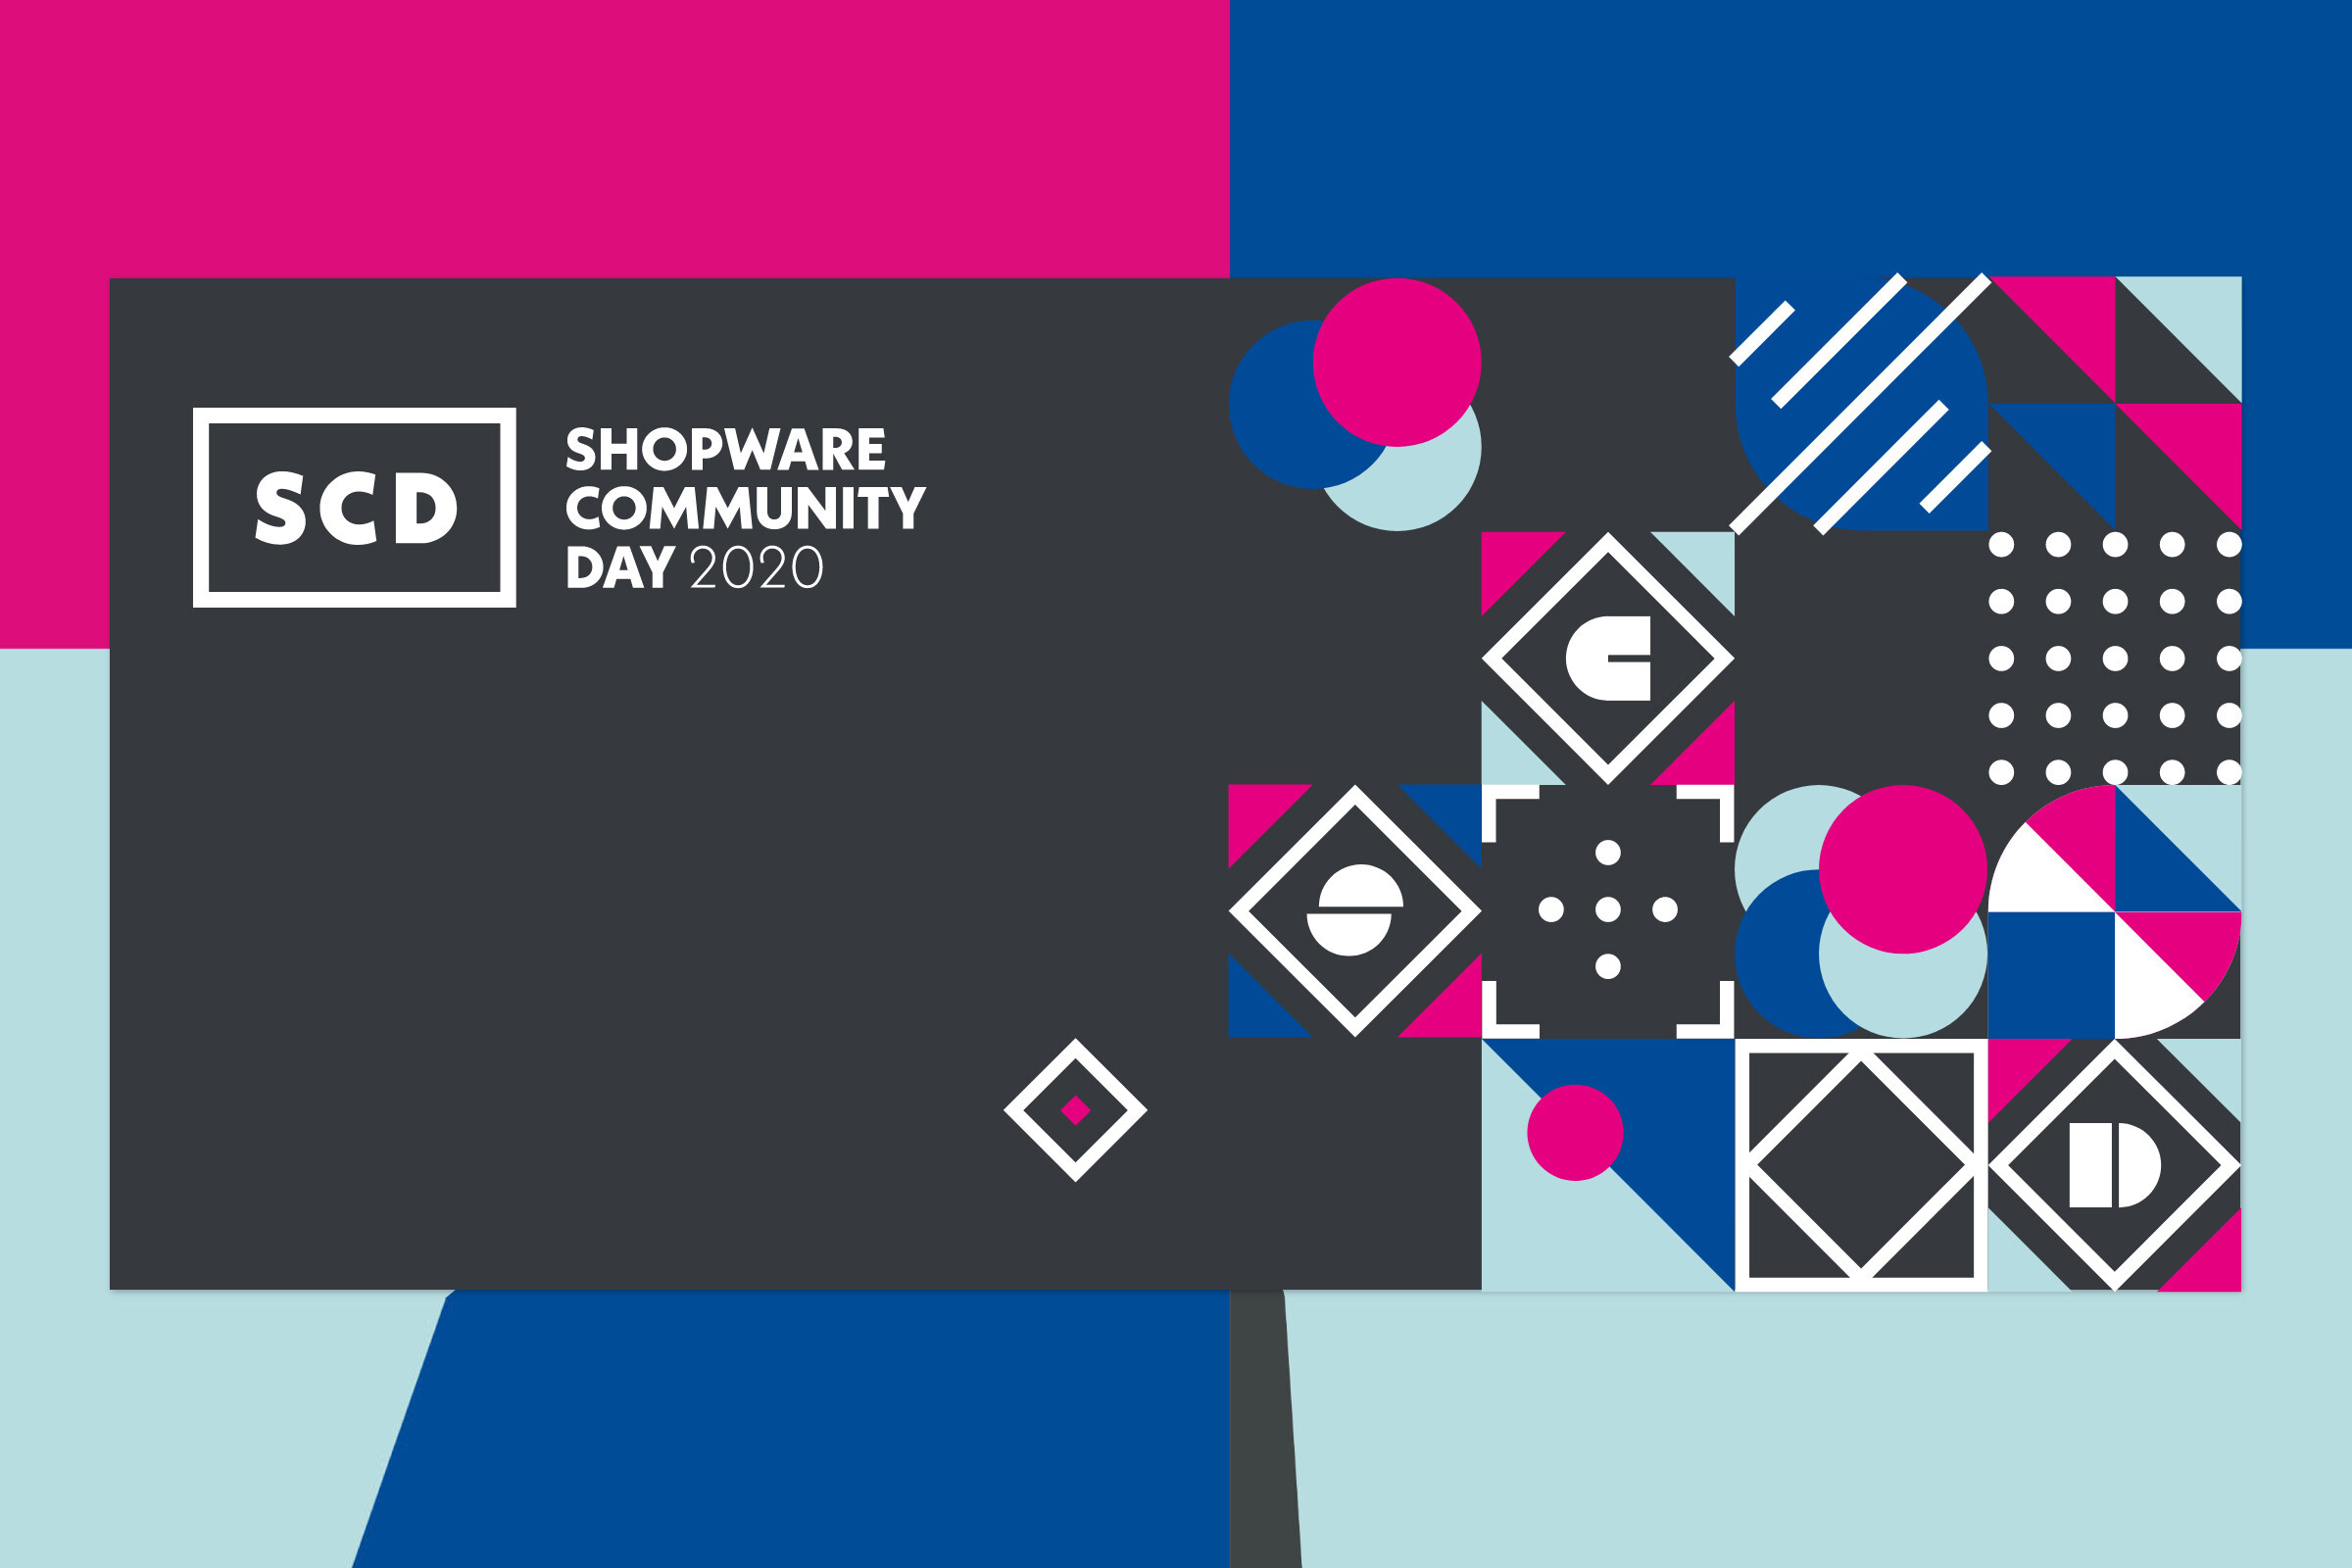 Das blau-pink-graue Banner des Shopware-Community-Days 2020.